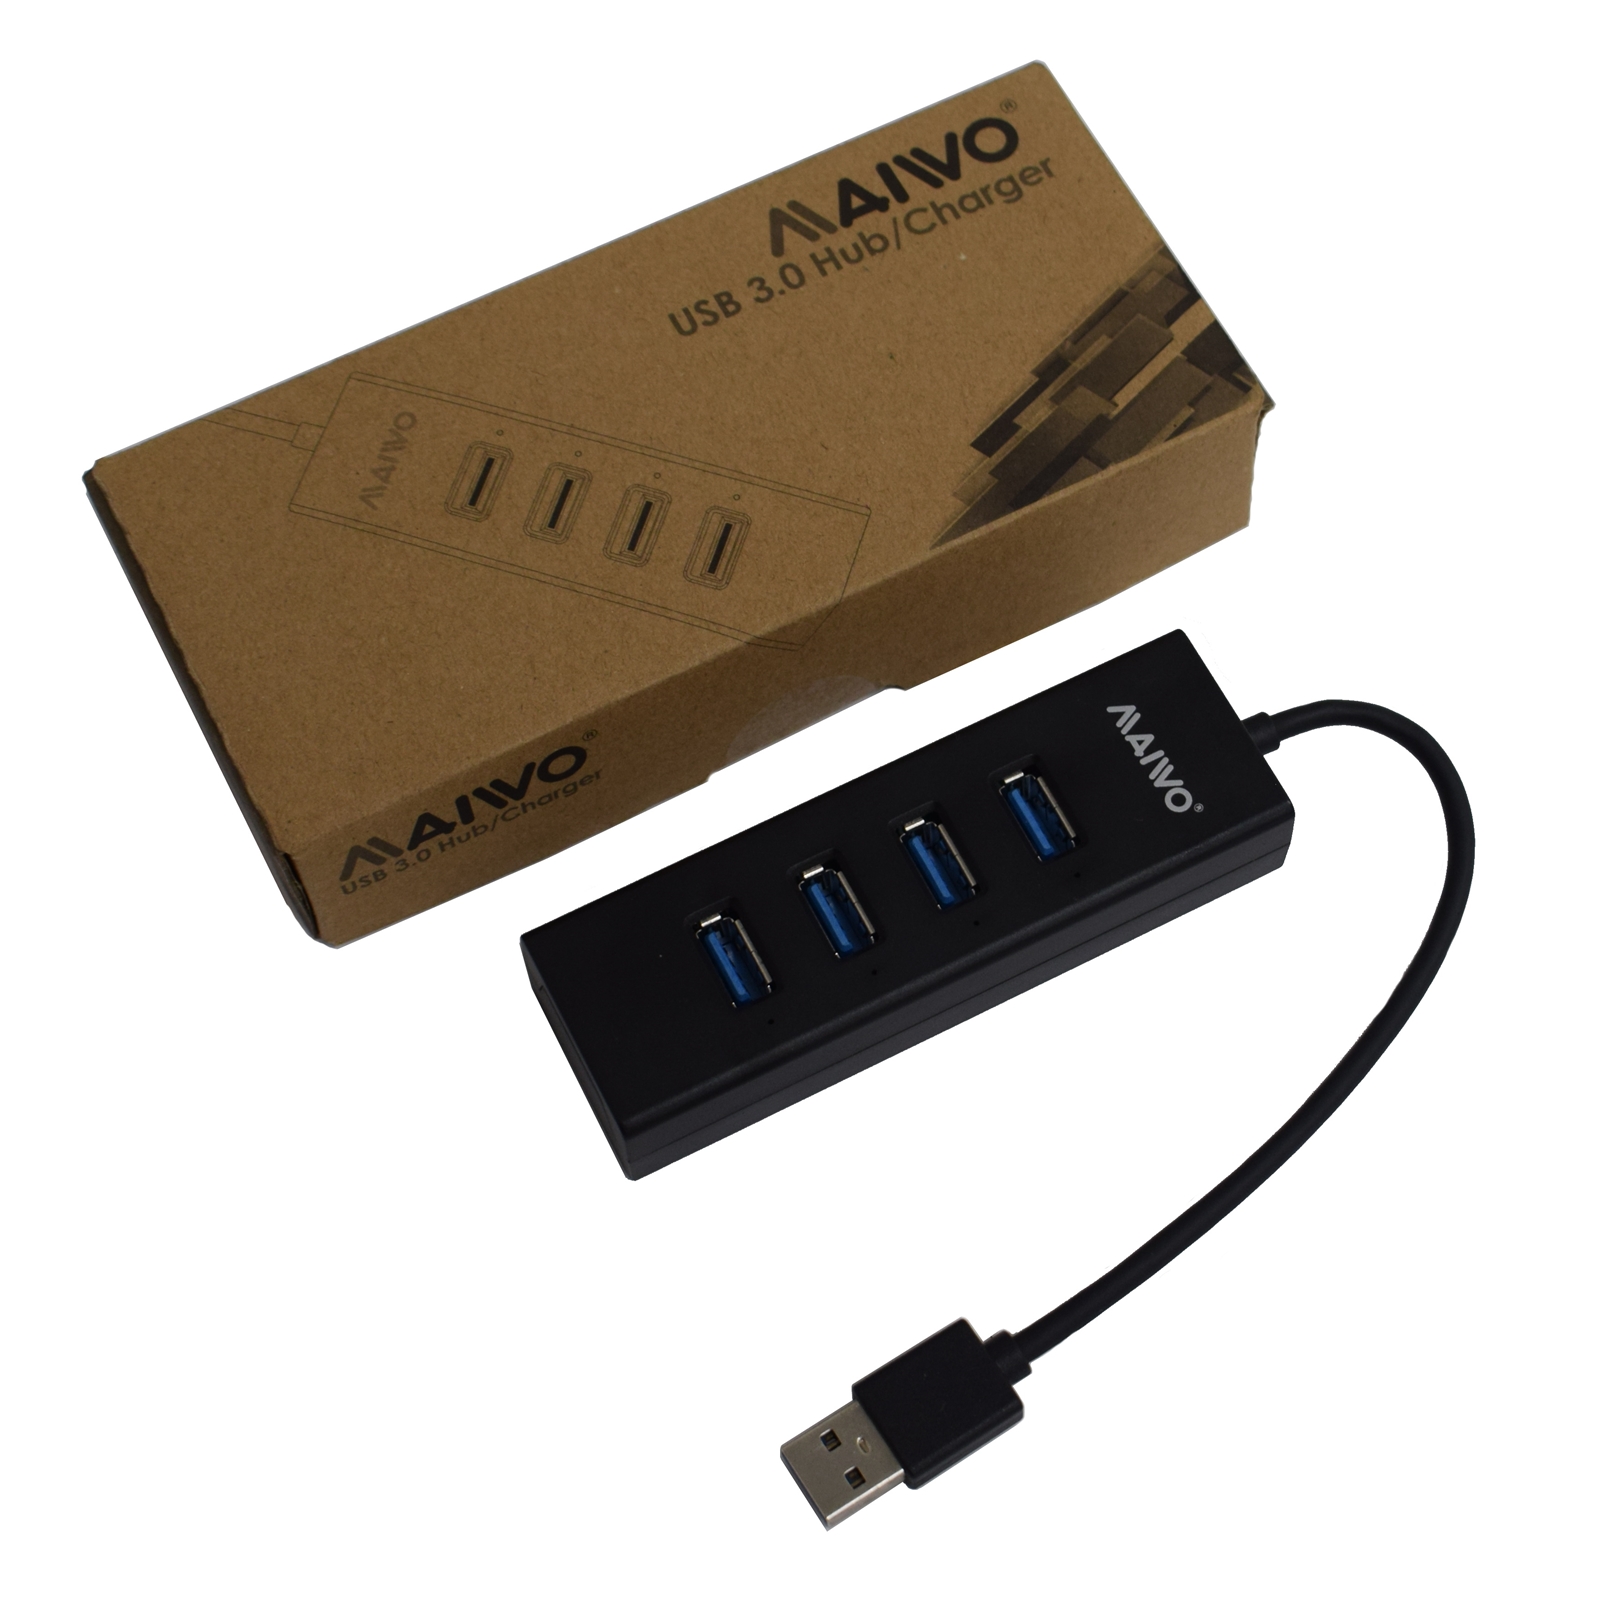 Maiwo KH304 4 Port USB 3.0 Hub & Charger